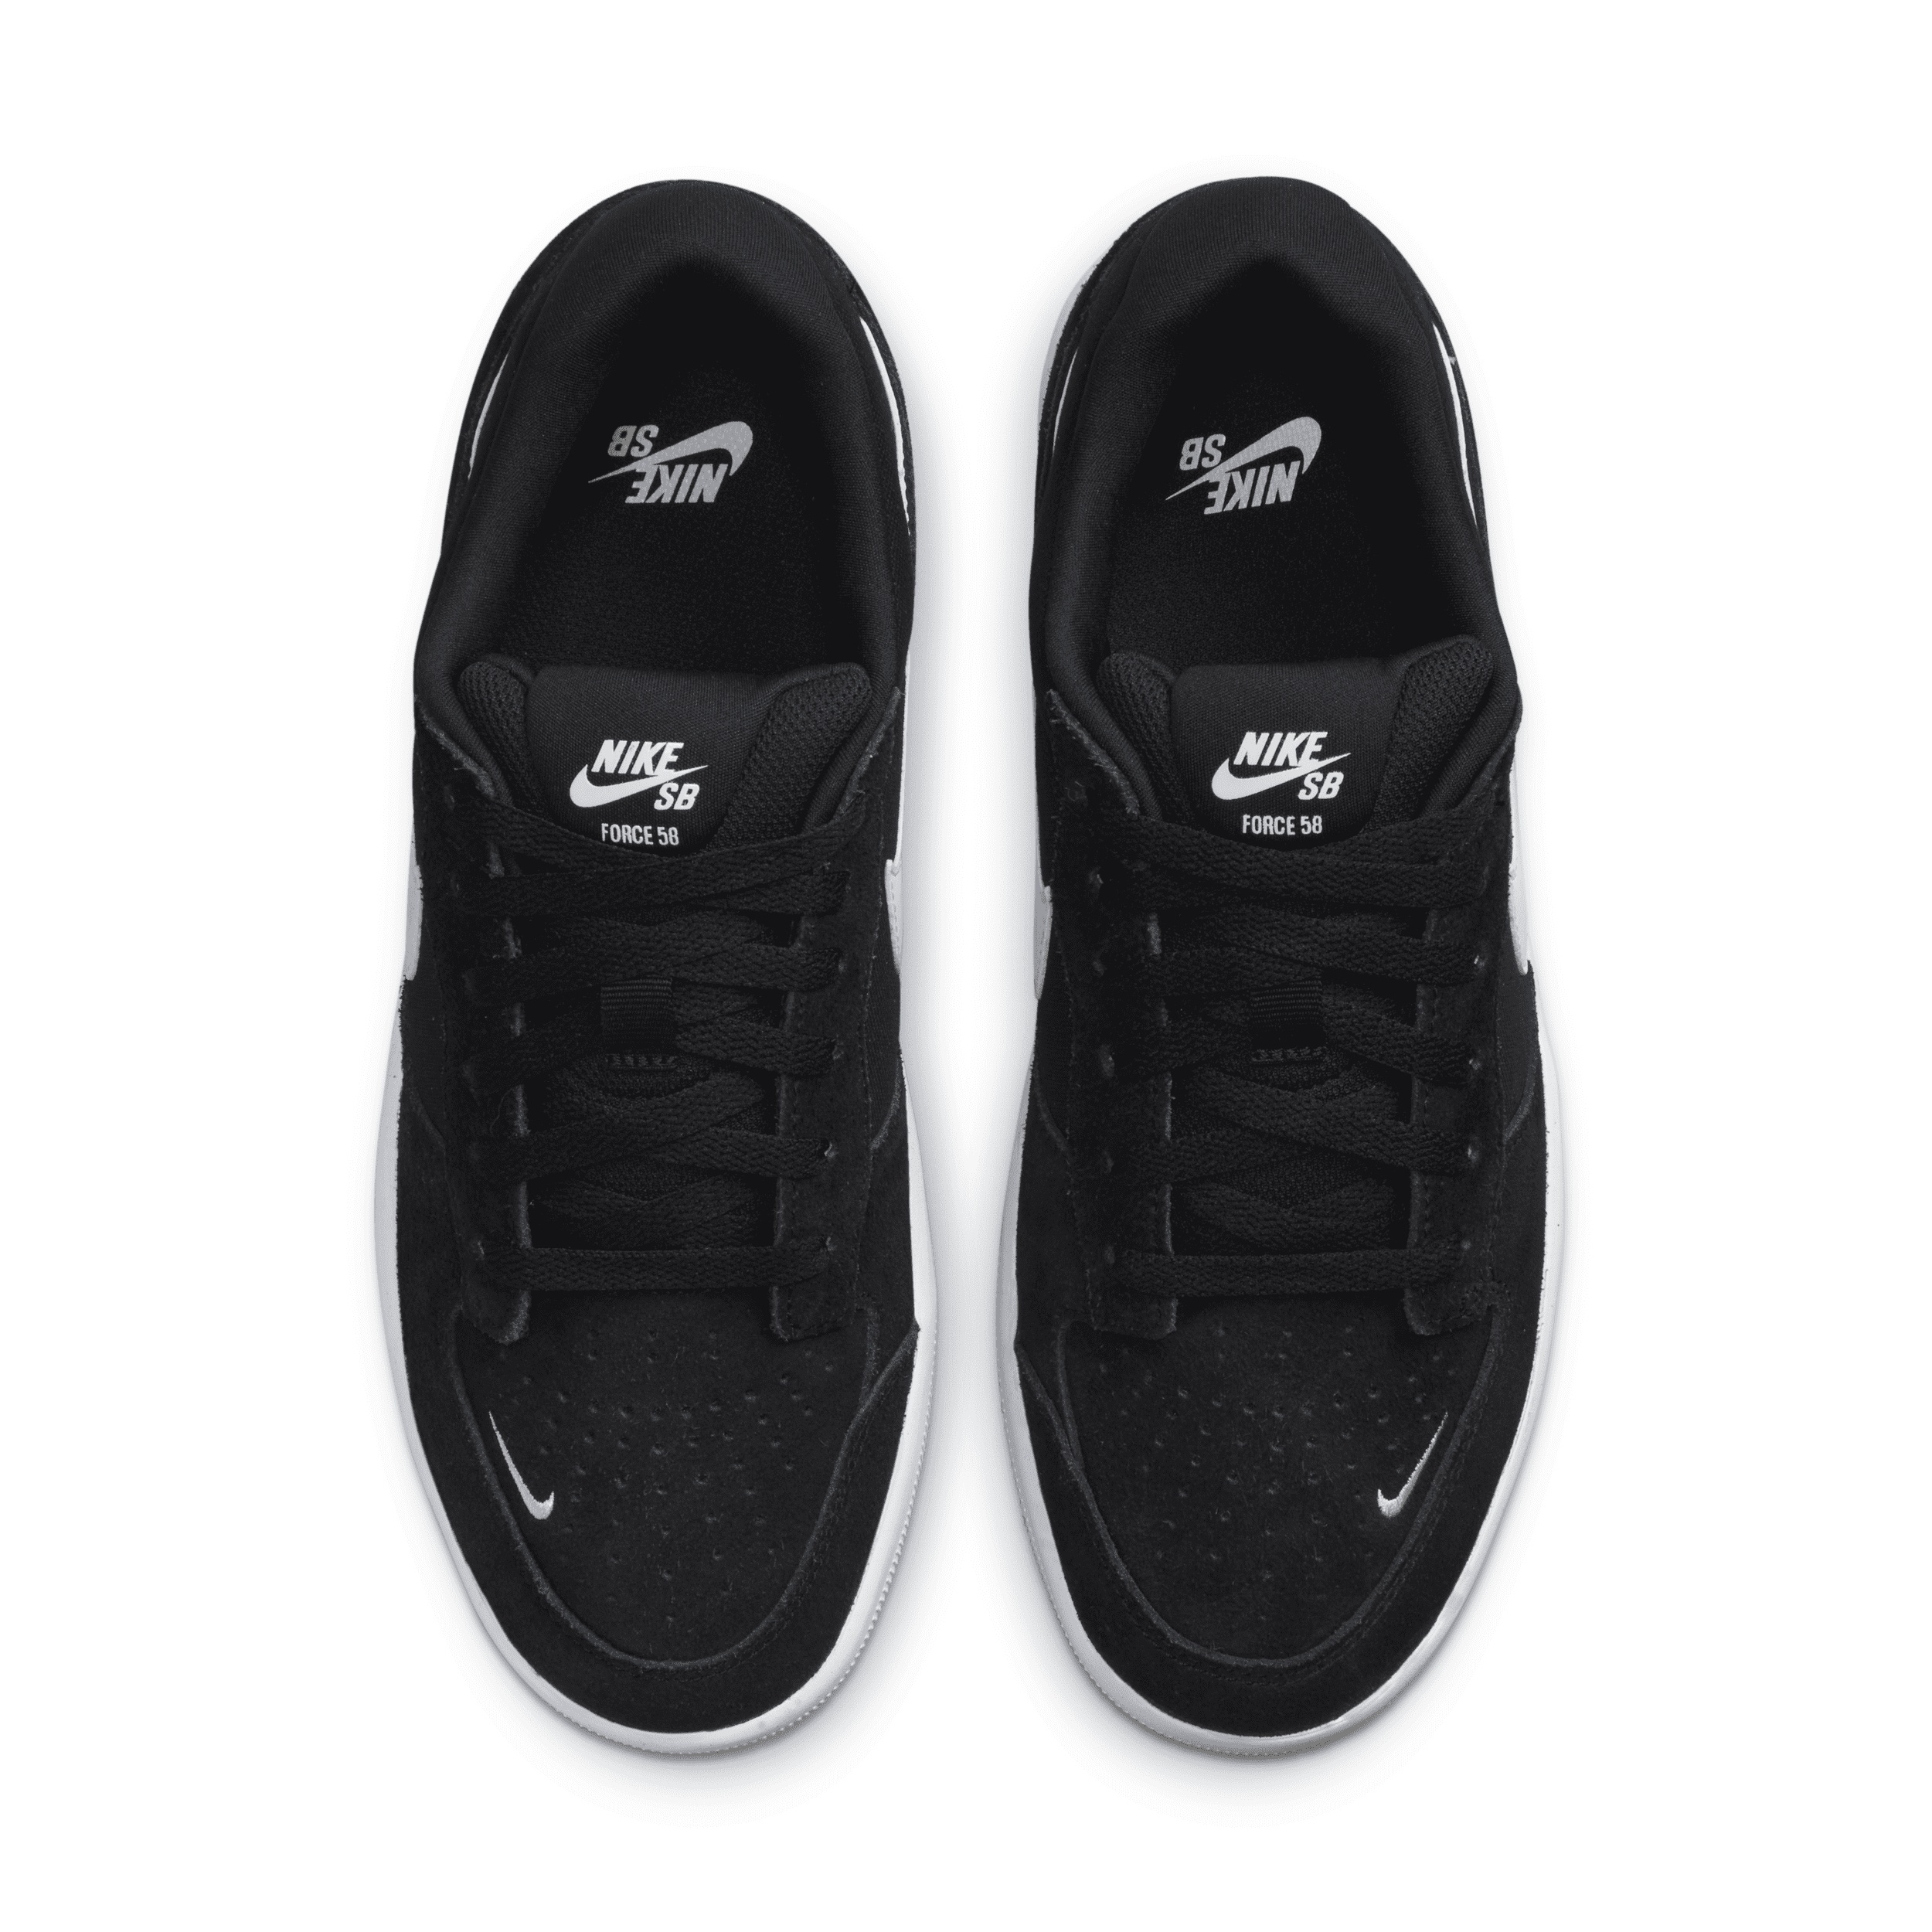 Unisex Nike SB Force 58 Skate Shoes - 4